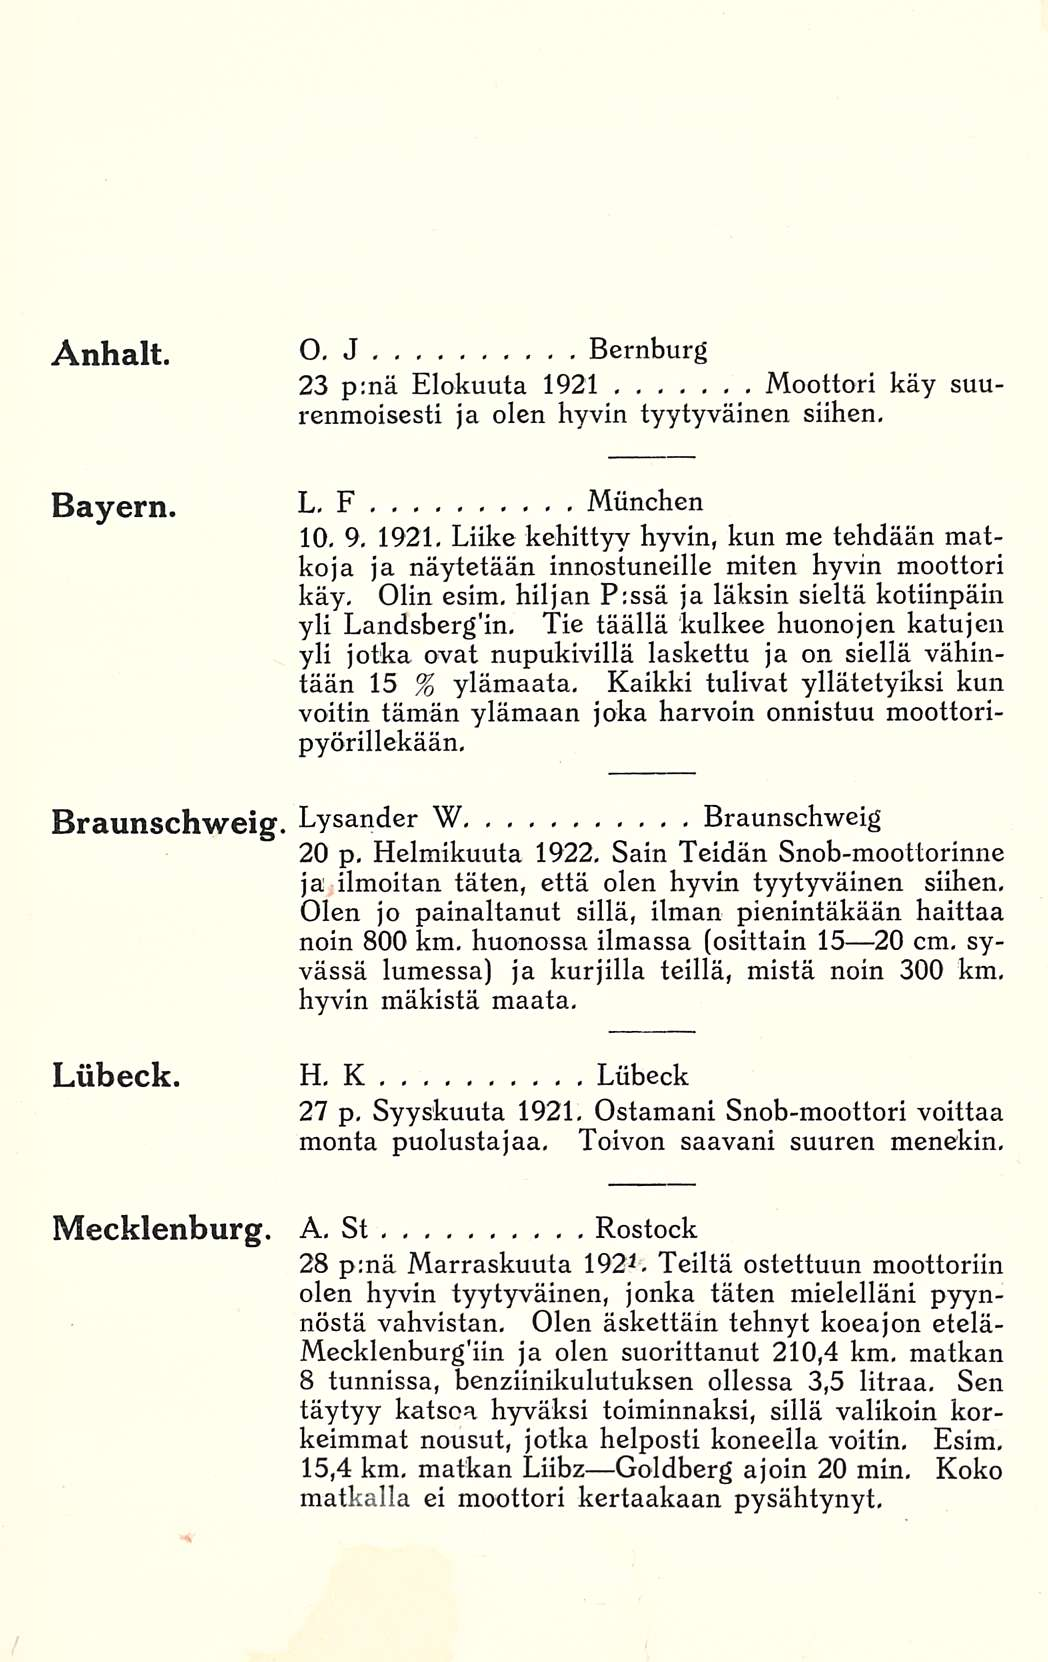 Anhalt. o. J Bernburg 23 p;nä Elokuuta 1921 Moottori käy suurenmoisesti ja olen hyvin tyytyväinen siihen, Bayern. L. F Munchen 10, 9.